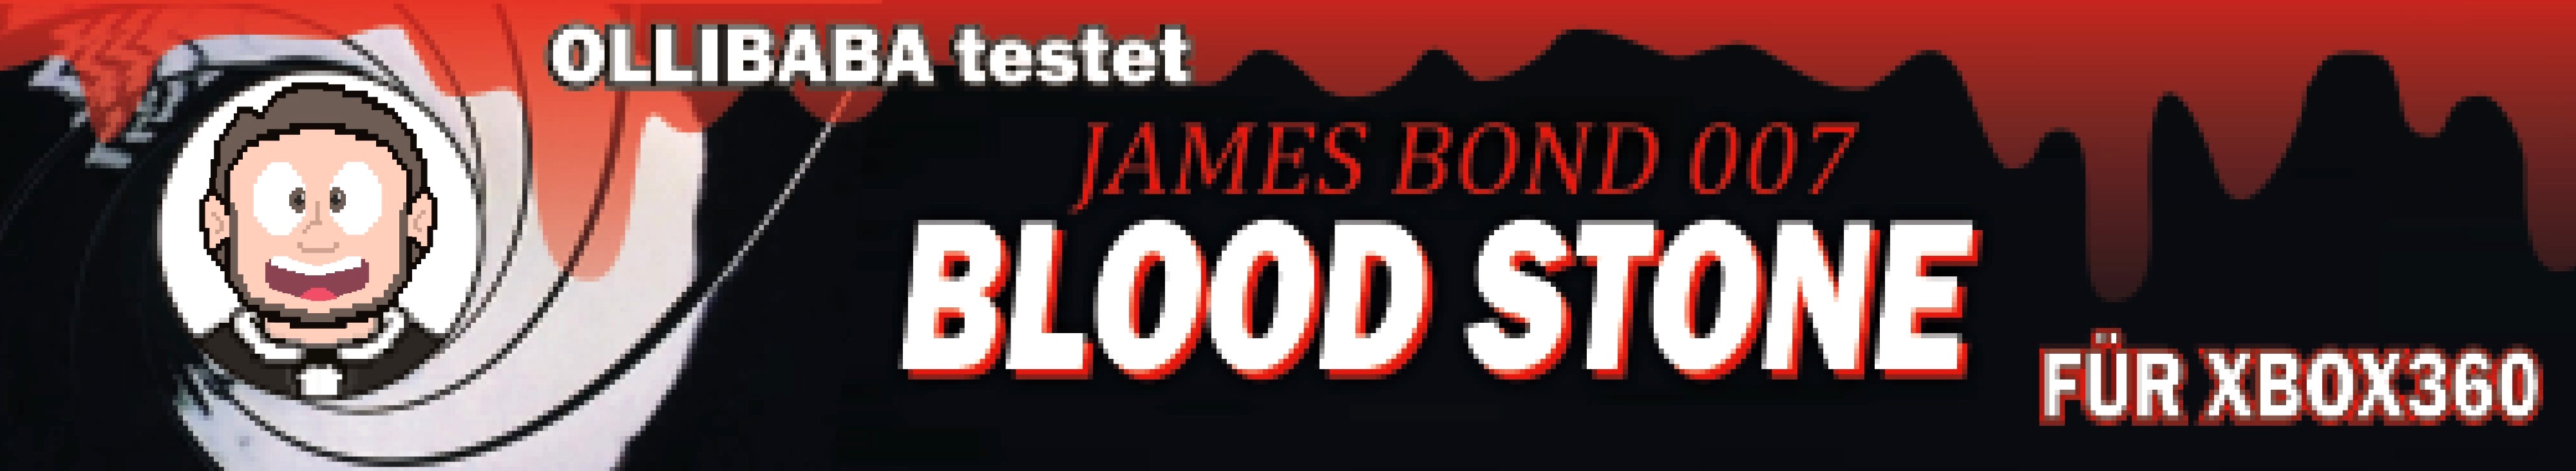 pixel 007 bloodstone oben